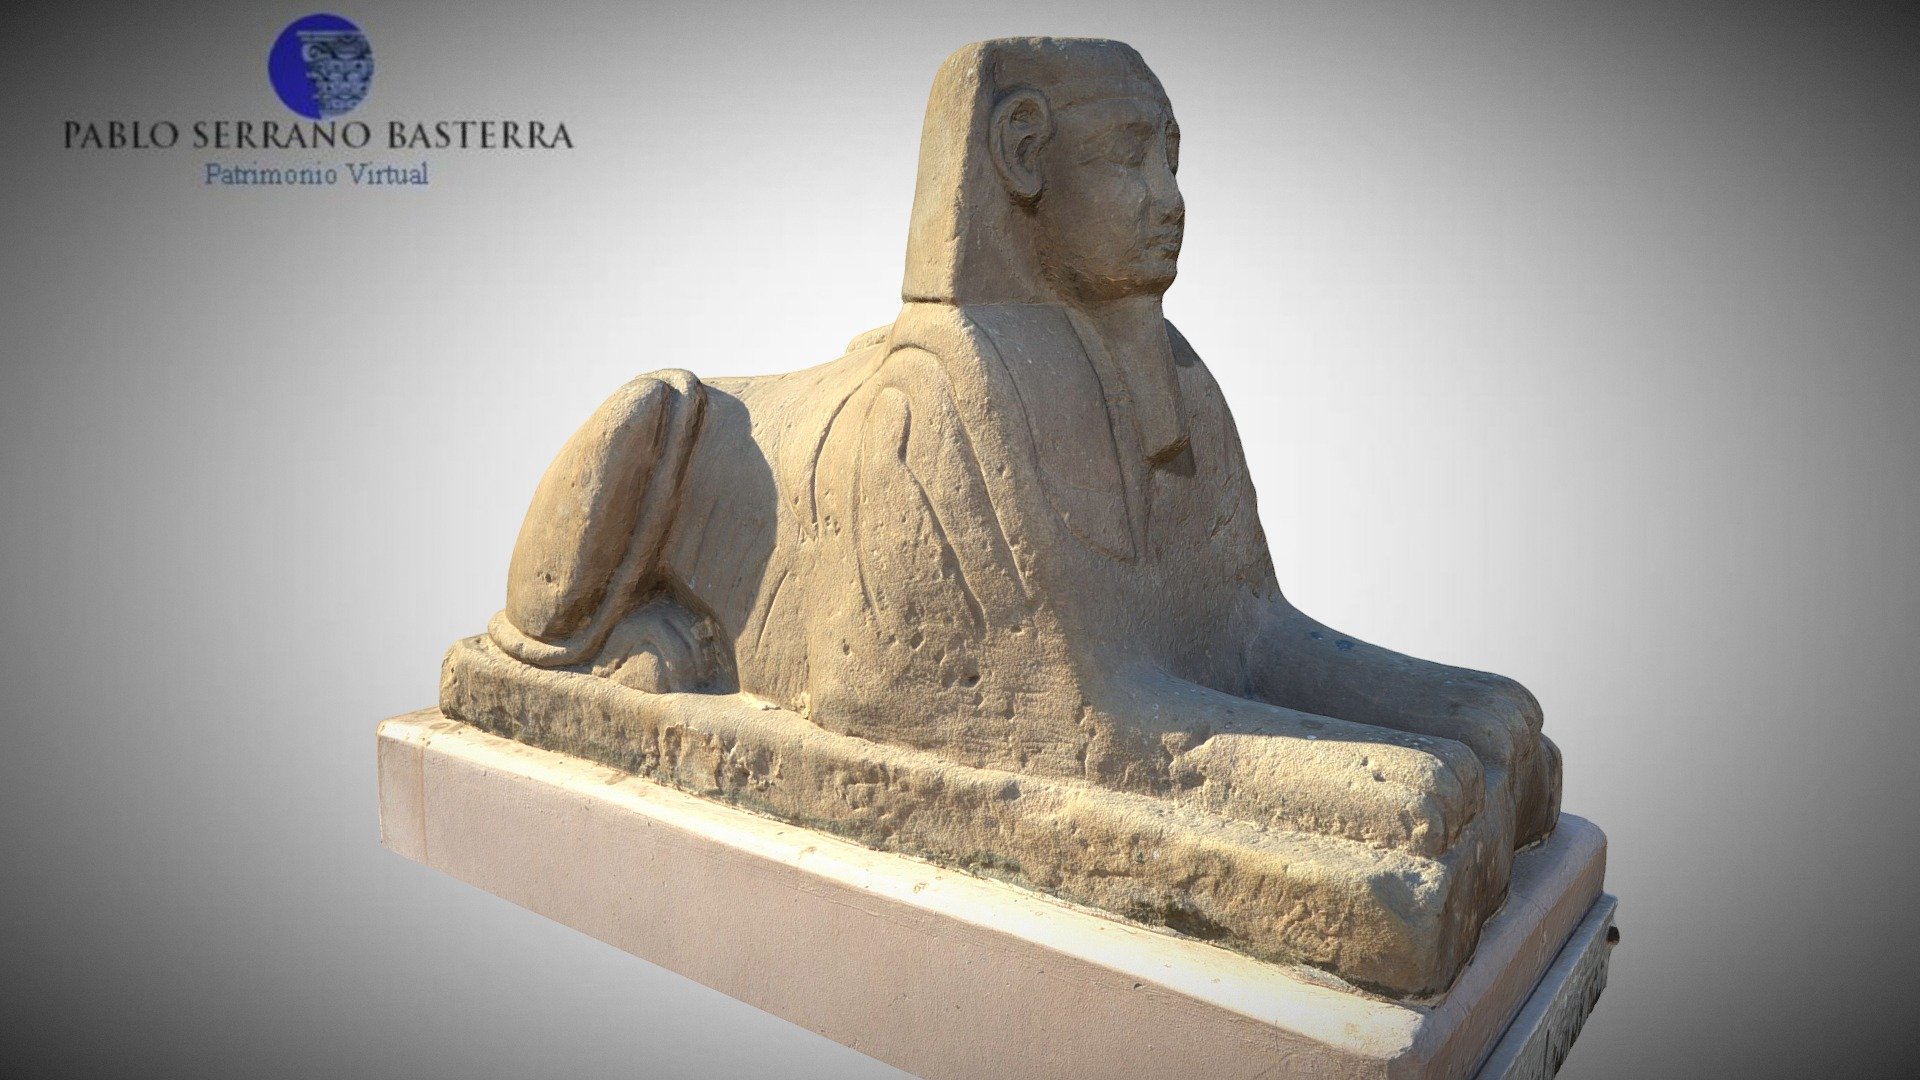 Por muchos motivos, Hatshepsut es uno de los personajes más fascinantes del antiguo Egipto. Nieta, hija y esposa de faraones, no se conformó con el papel secundario que la sociedad reservaba a las mujeres, sino que asumió ella misma el gobierno de las Dos Tierras a la muerte de su marido, Tutmosis III, y durante la minoría de edad de Tutmosis IV.
Pero en vez de conformarse con la regencia, se hizo proclamar Faraón del Alto y el Bajo Egipto (la quinta de la dinastía XVIII), adoptando con inteligencia todos los tributos reales y ganándose la confianza del poderoso sacerdicio de Amón. De esta manera, inauguró un largo reinado de más de 20 años (desde 1490 hasta 1468 a.C.) en el que el país del Nilo vivió en relativa paz y prosperidad.
El impresionante templo aterrazado (y en parte excavado en la roca) que se hizo construir en Deir el Bahari es uno de los muchos monumentos que debemos a su enérgico gobierno. Esta esfinge fue una de las muchas que jalonaban la avenida ceremonial que permitía el acceso al edificio 3d model